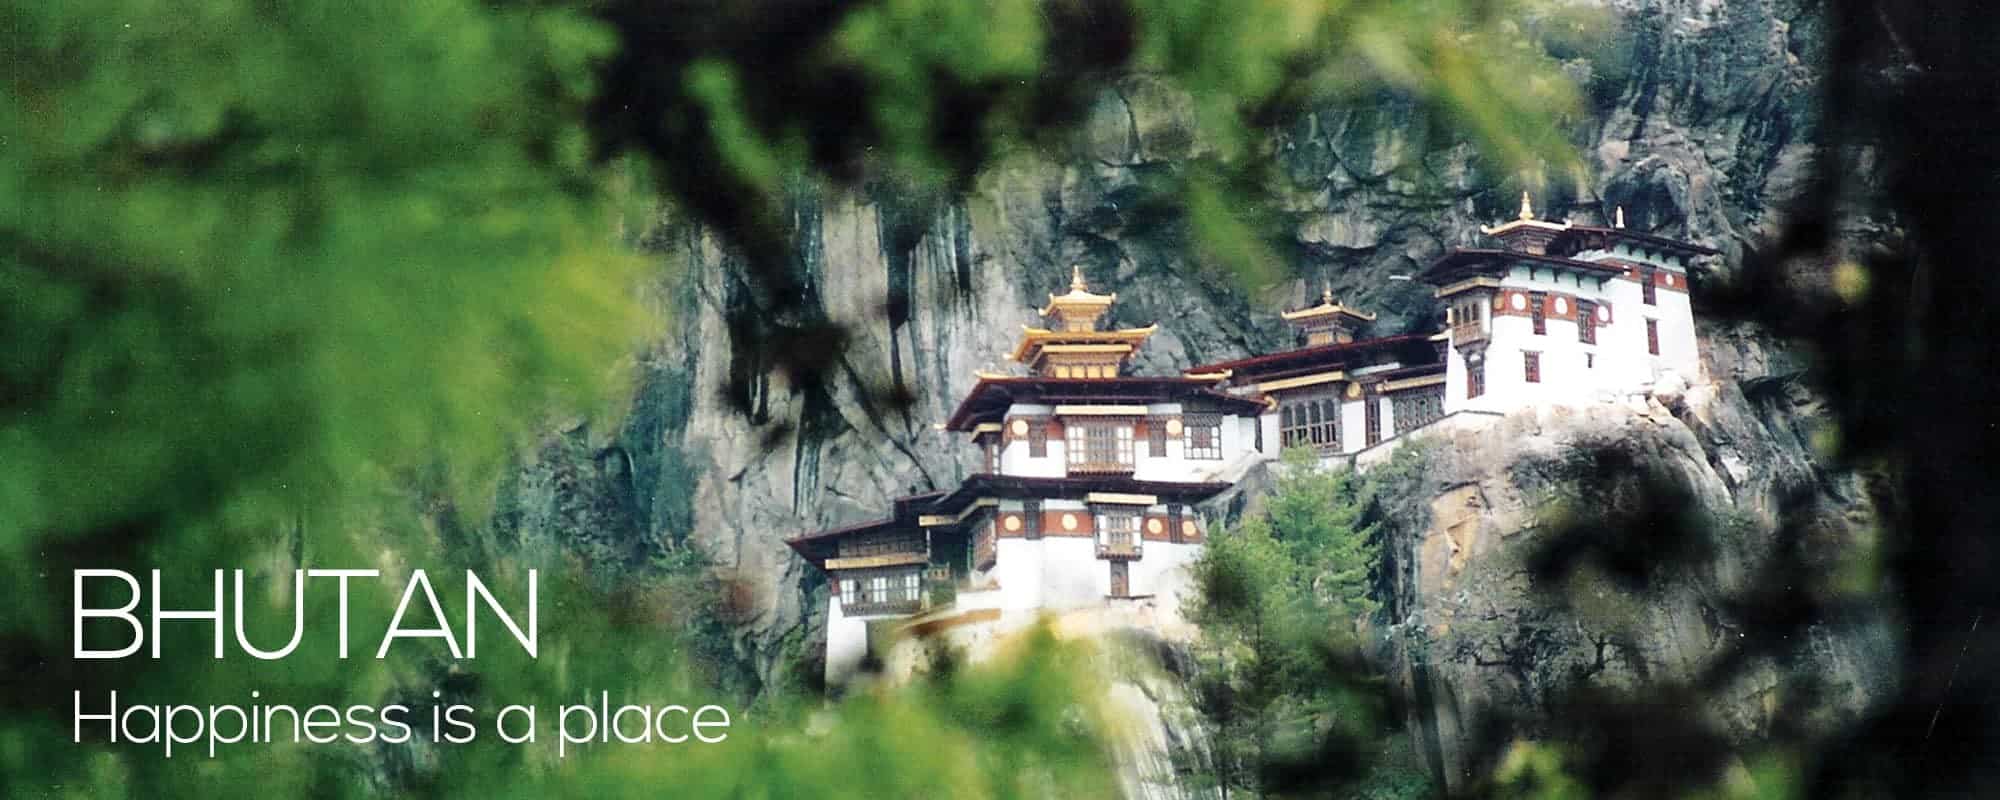 Bhutan bjerg kloster